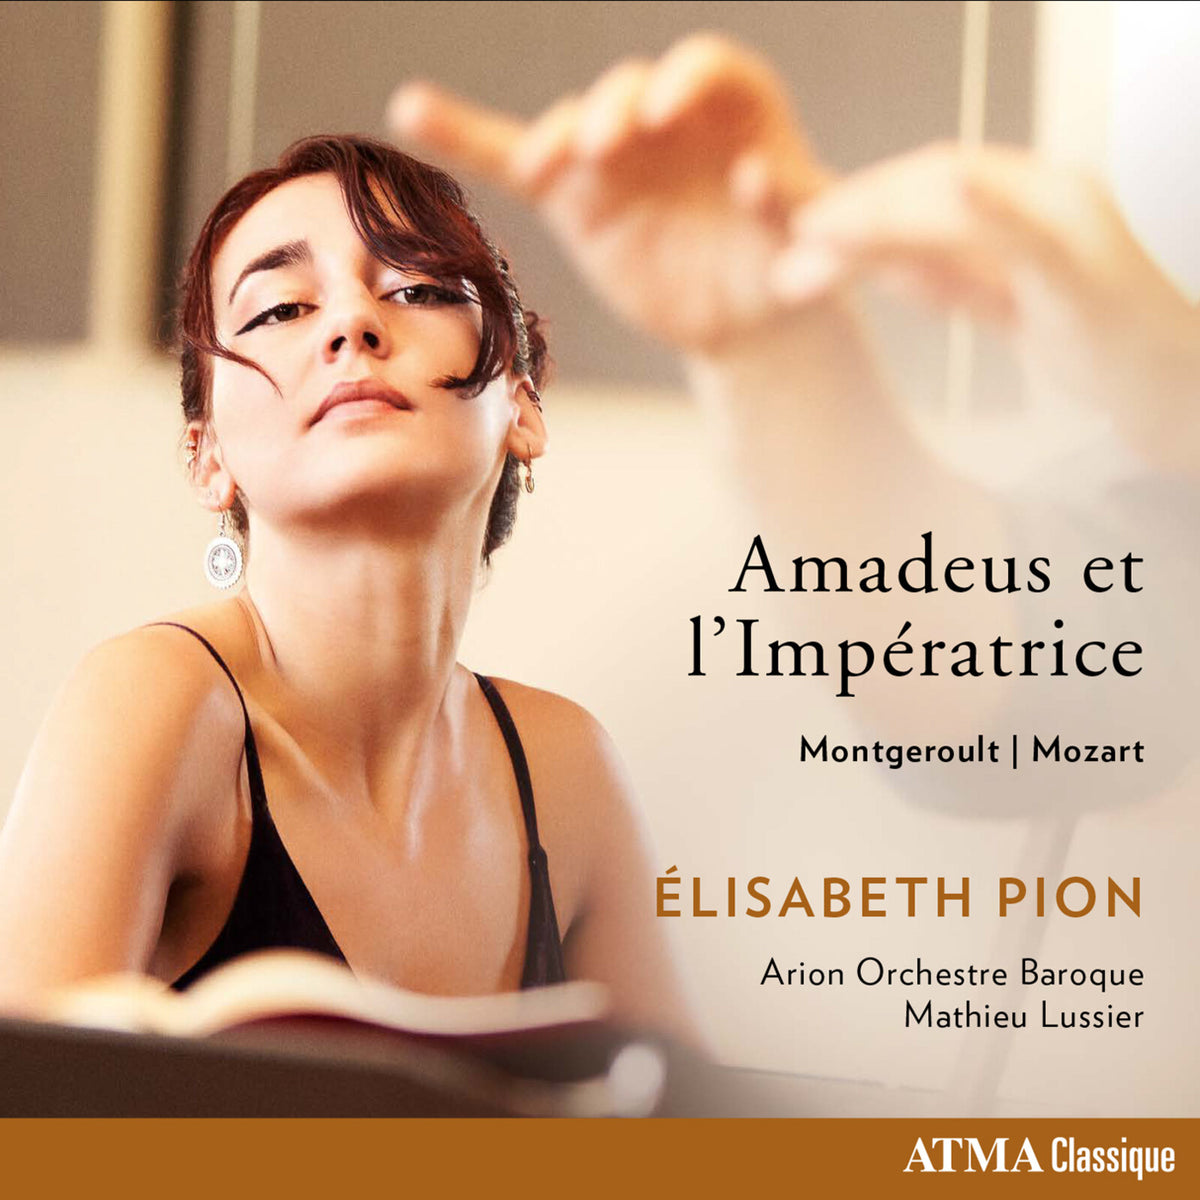 Elisabeth Pion; Arion Baroque Orchestra - Amadeus et L'Imperatrice - ACD22885